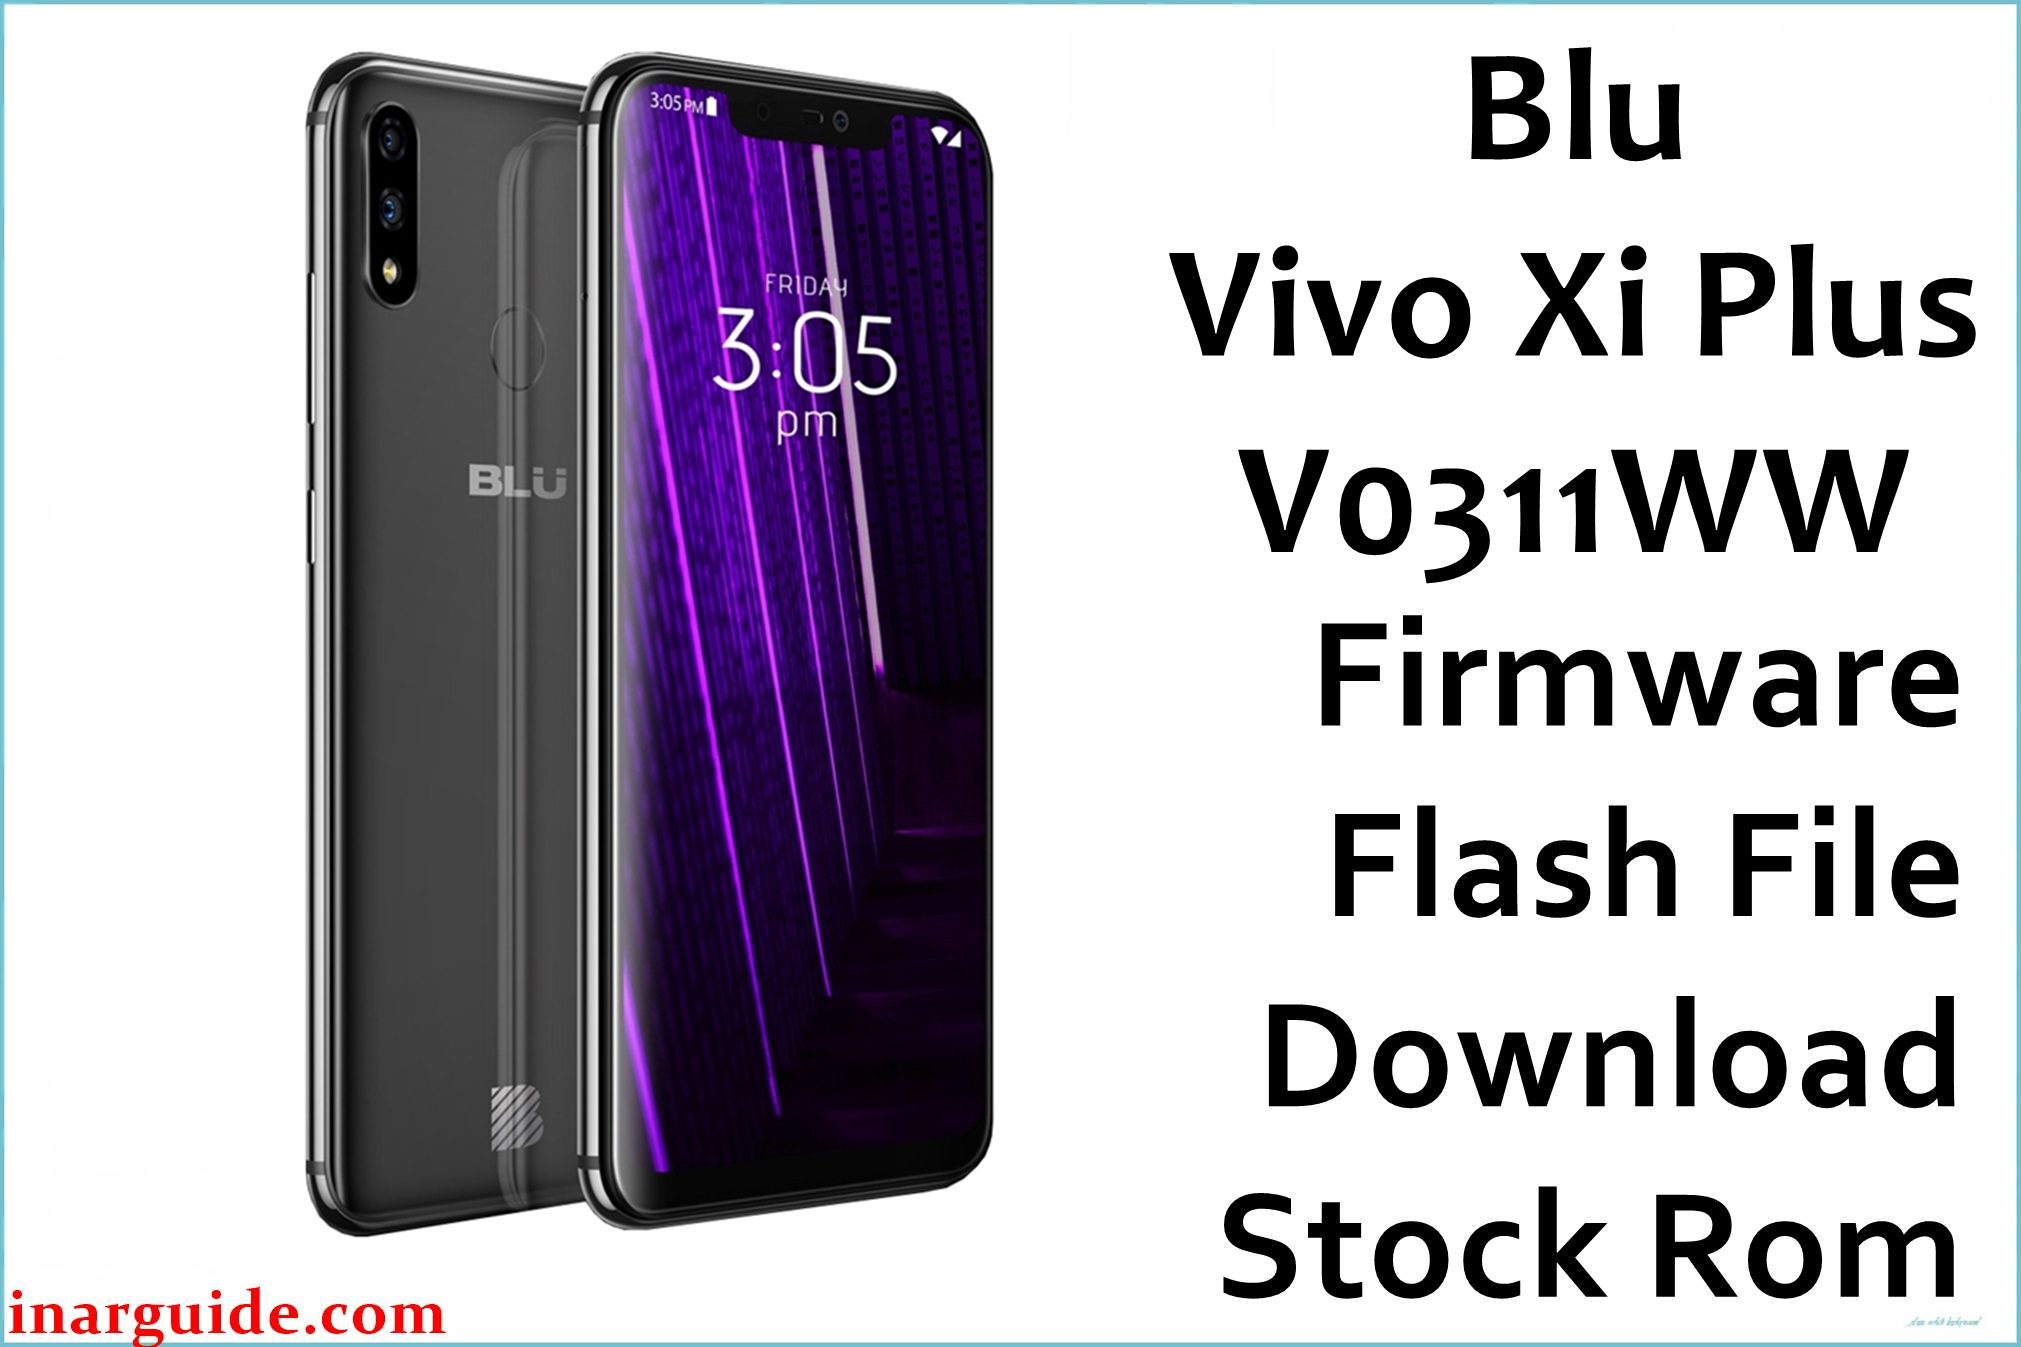 Blu Vivo Xi Plus V0311WW